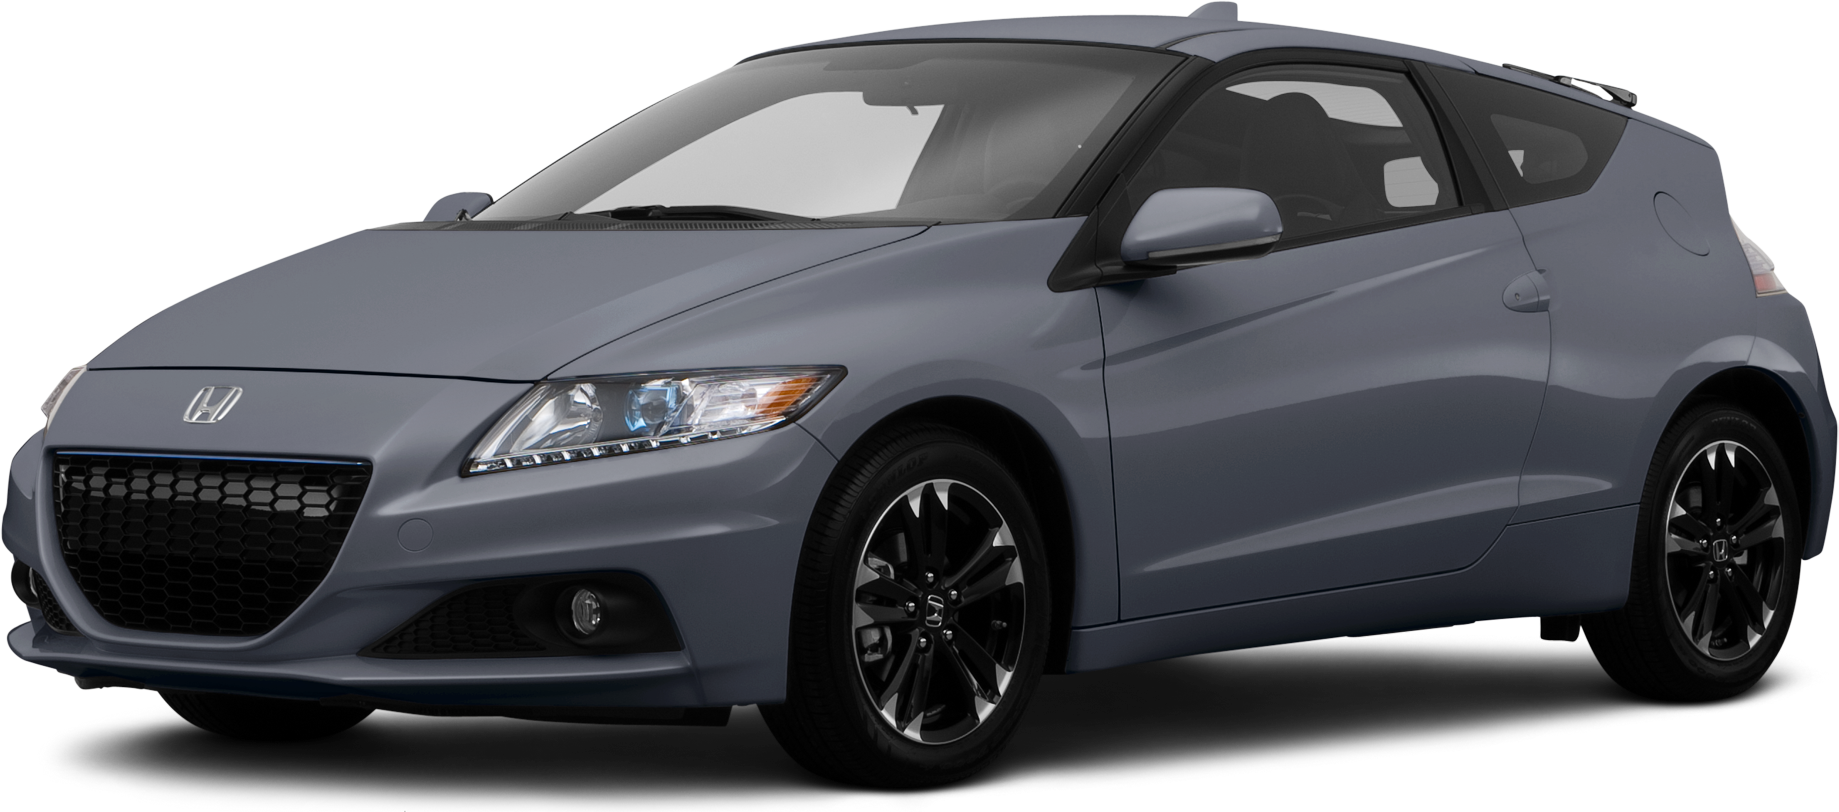 Honda CR-Z - Car Body Design